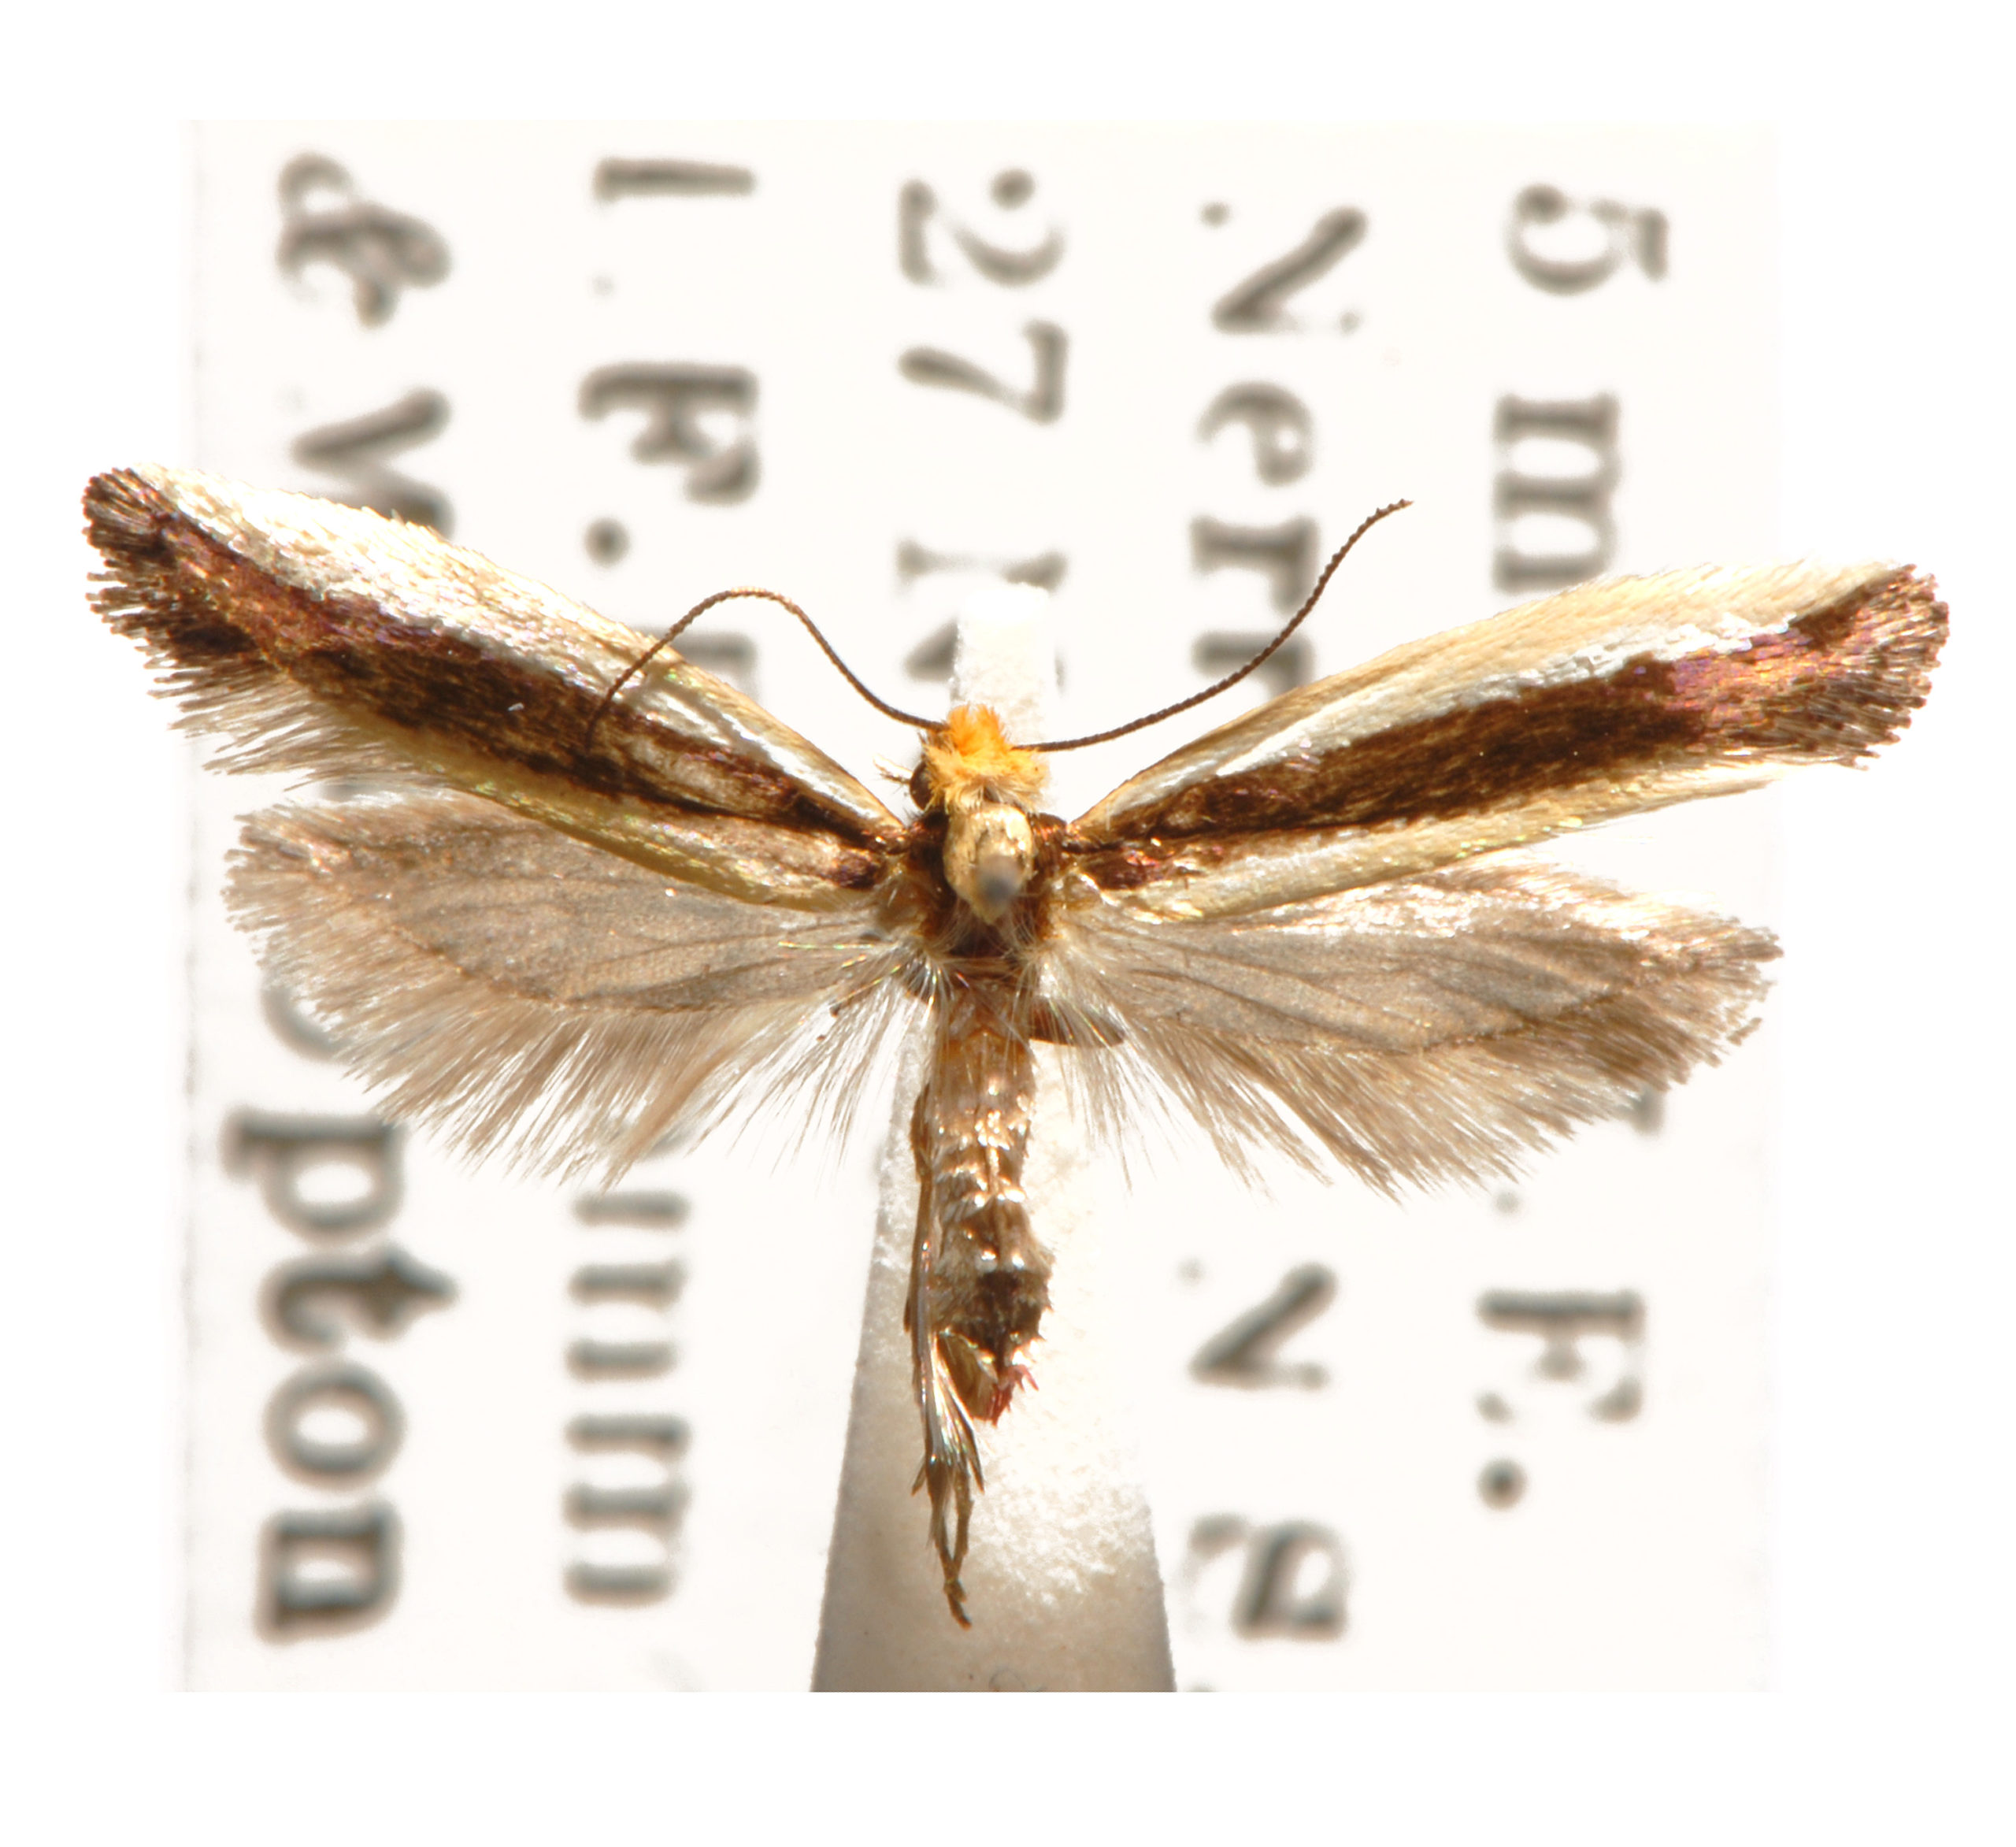 Ptyssoptera lativittella